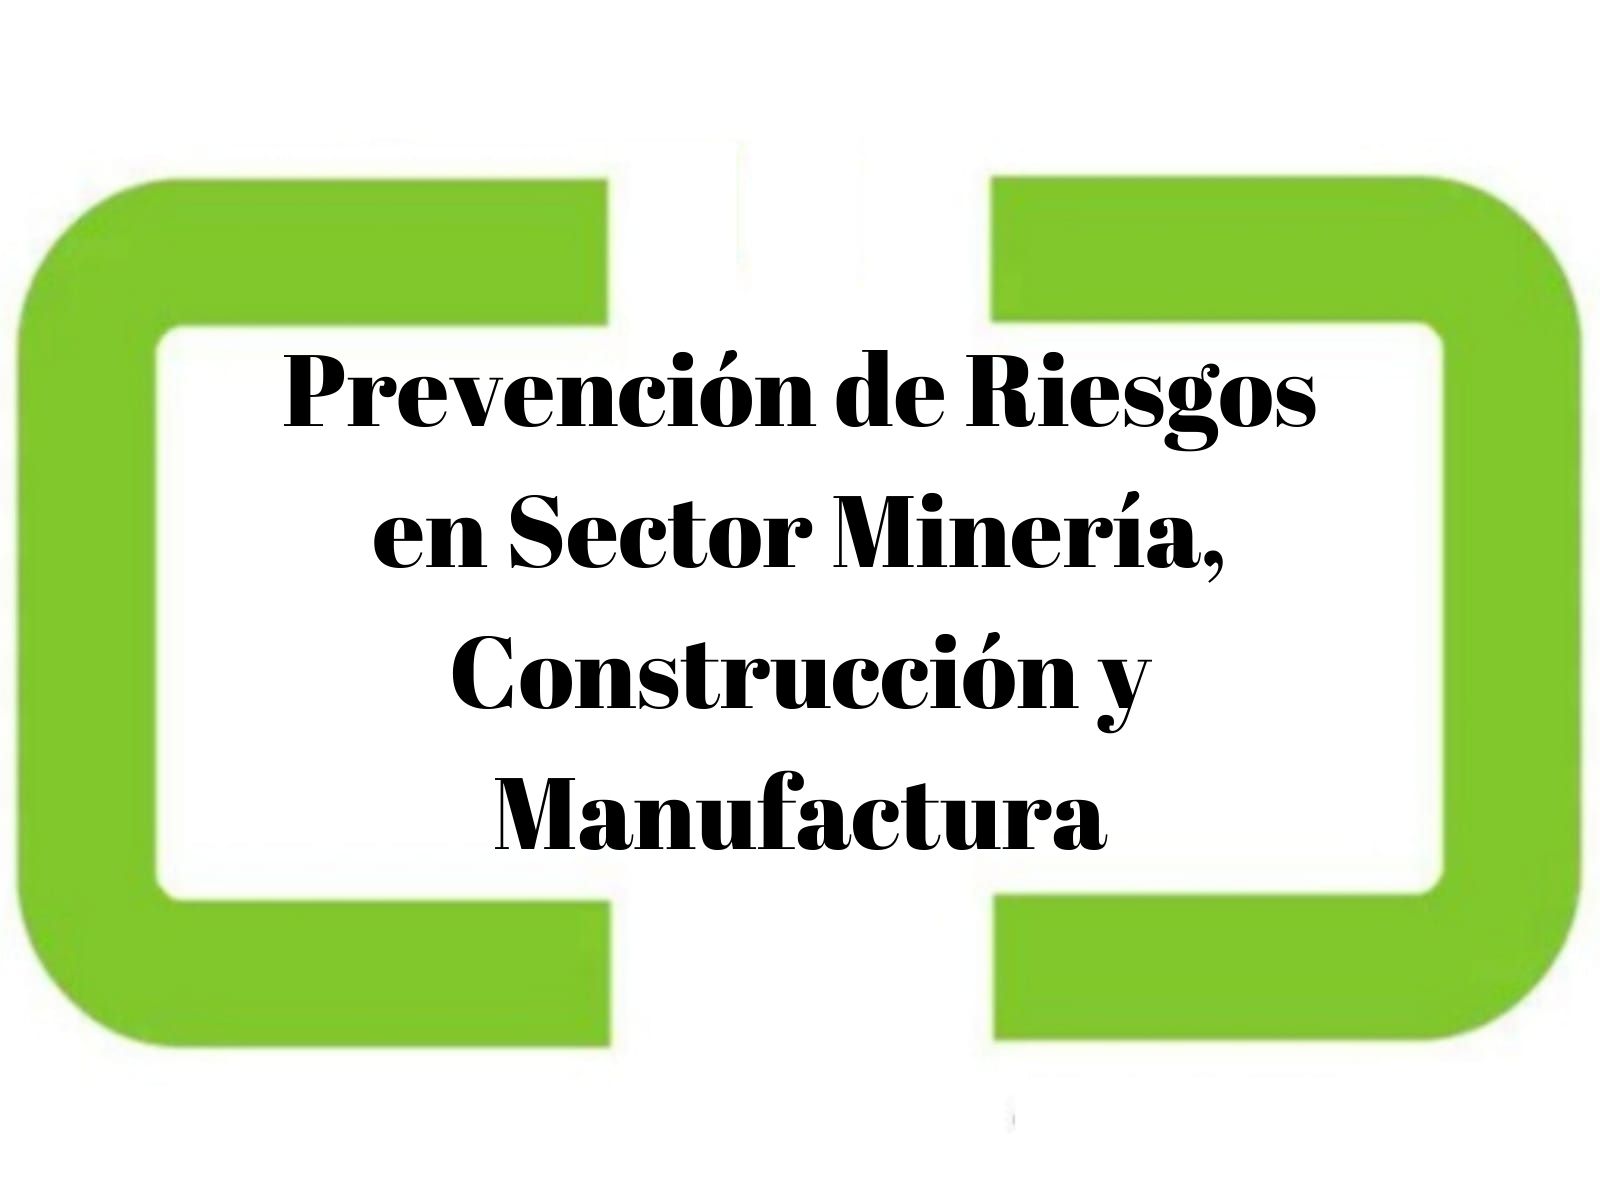 Prevención de Riesgos en Sector Minería, Construcción y Manufactura